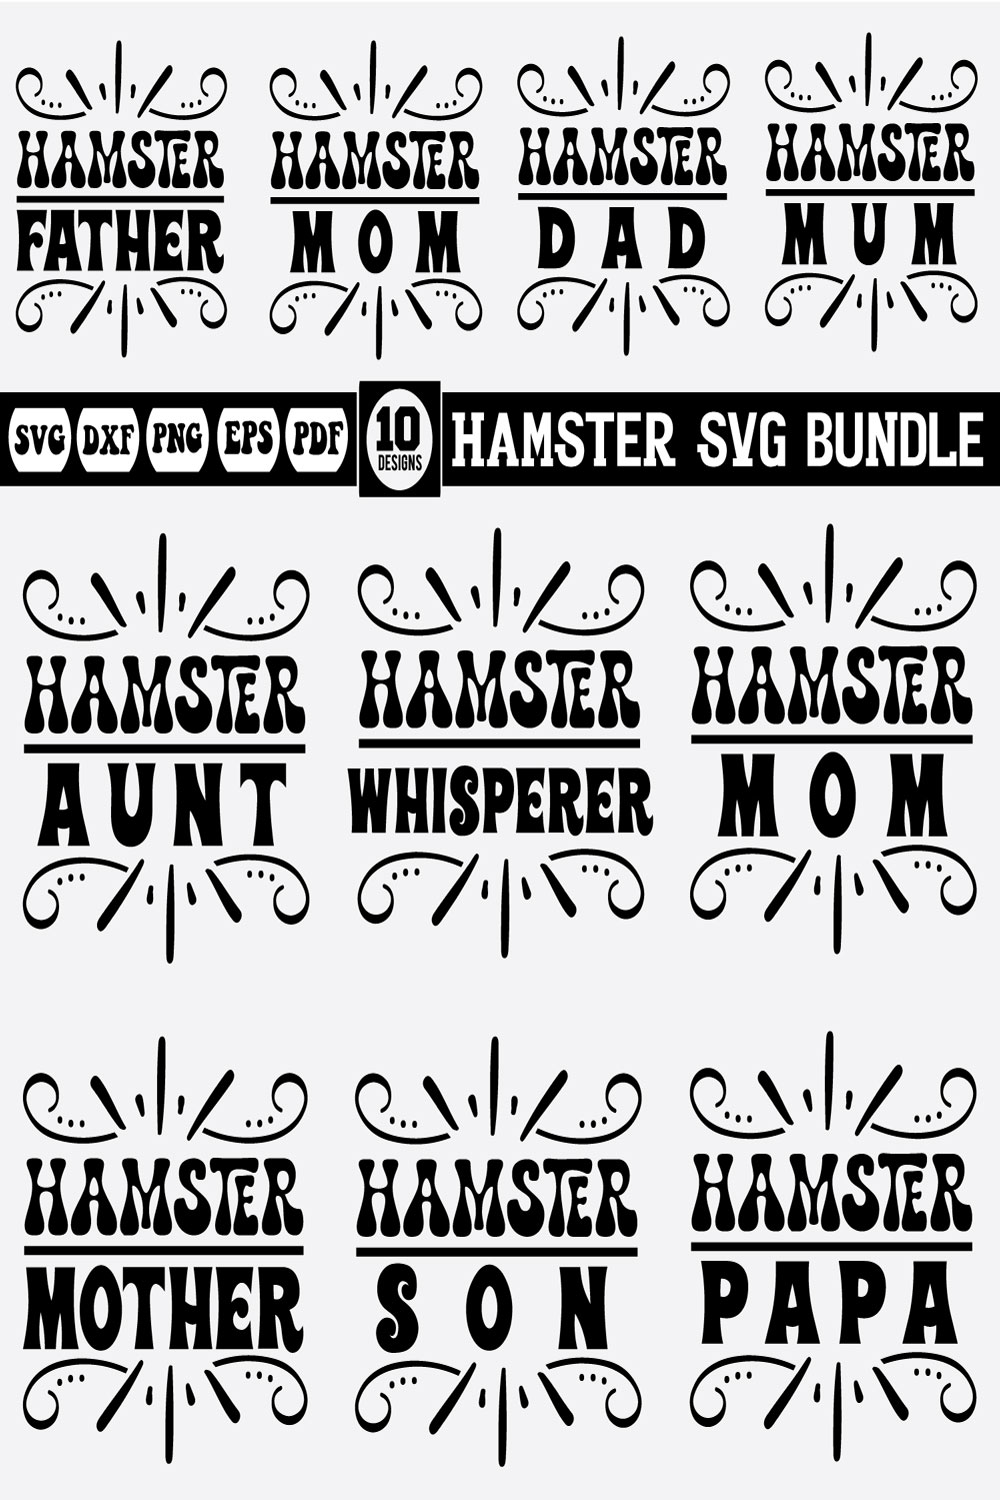 Hamster Bundle pinterest preview image.